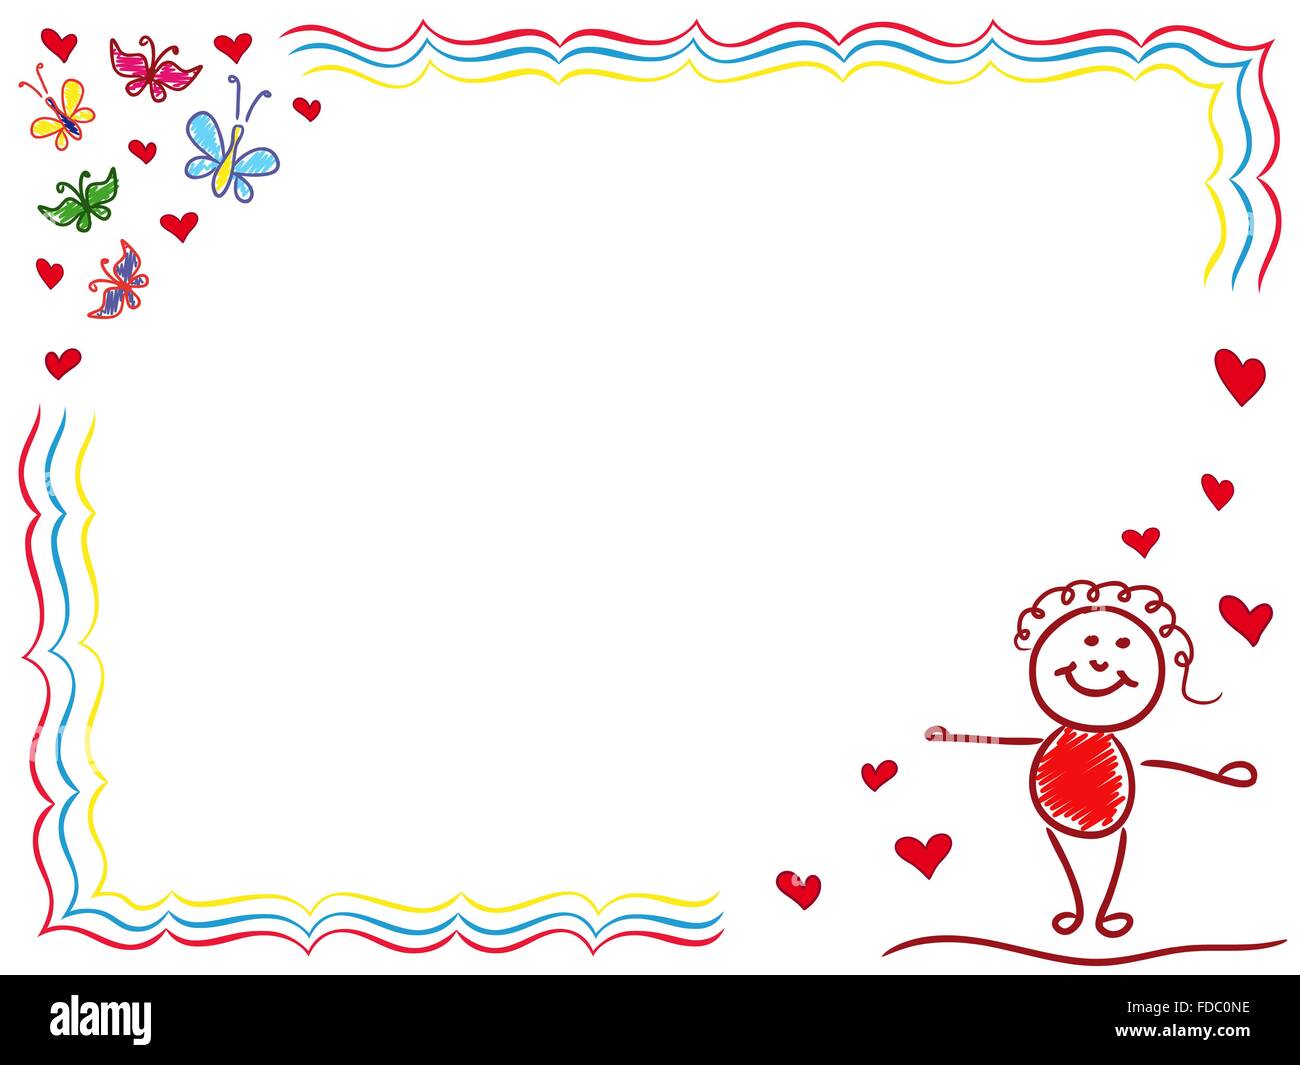 Fille dans l'amour, dessin à la main vector cartoon Valentine Greeting card Illustration de Vecteur